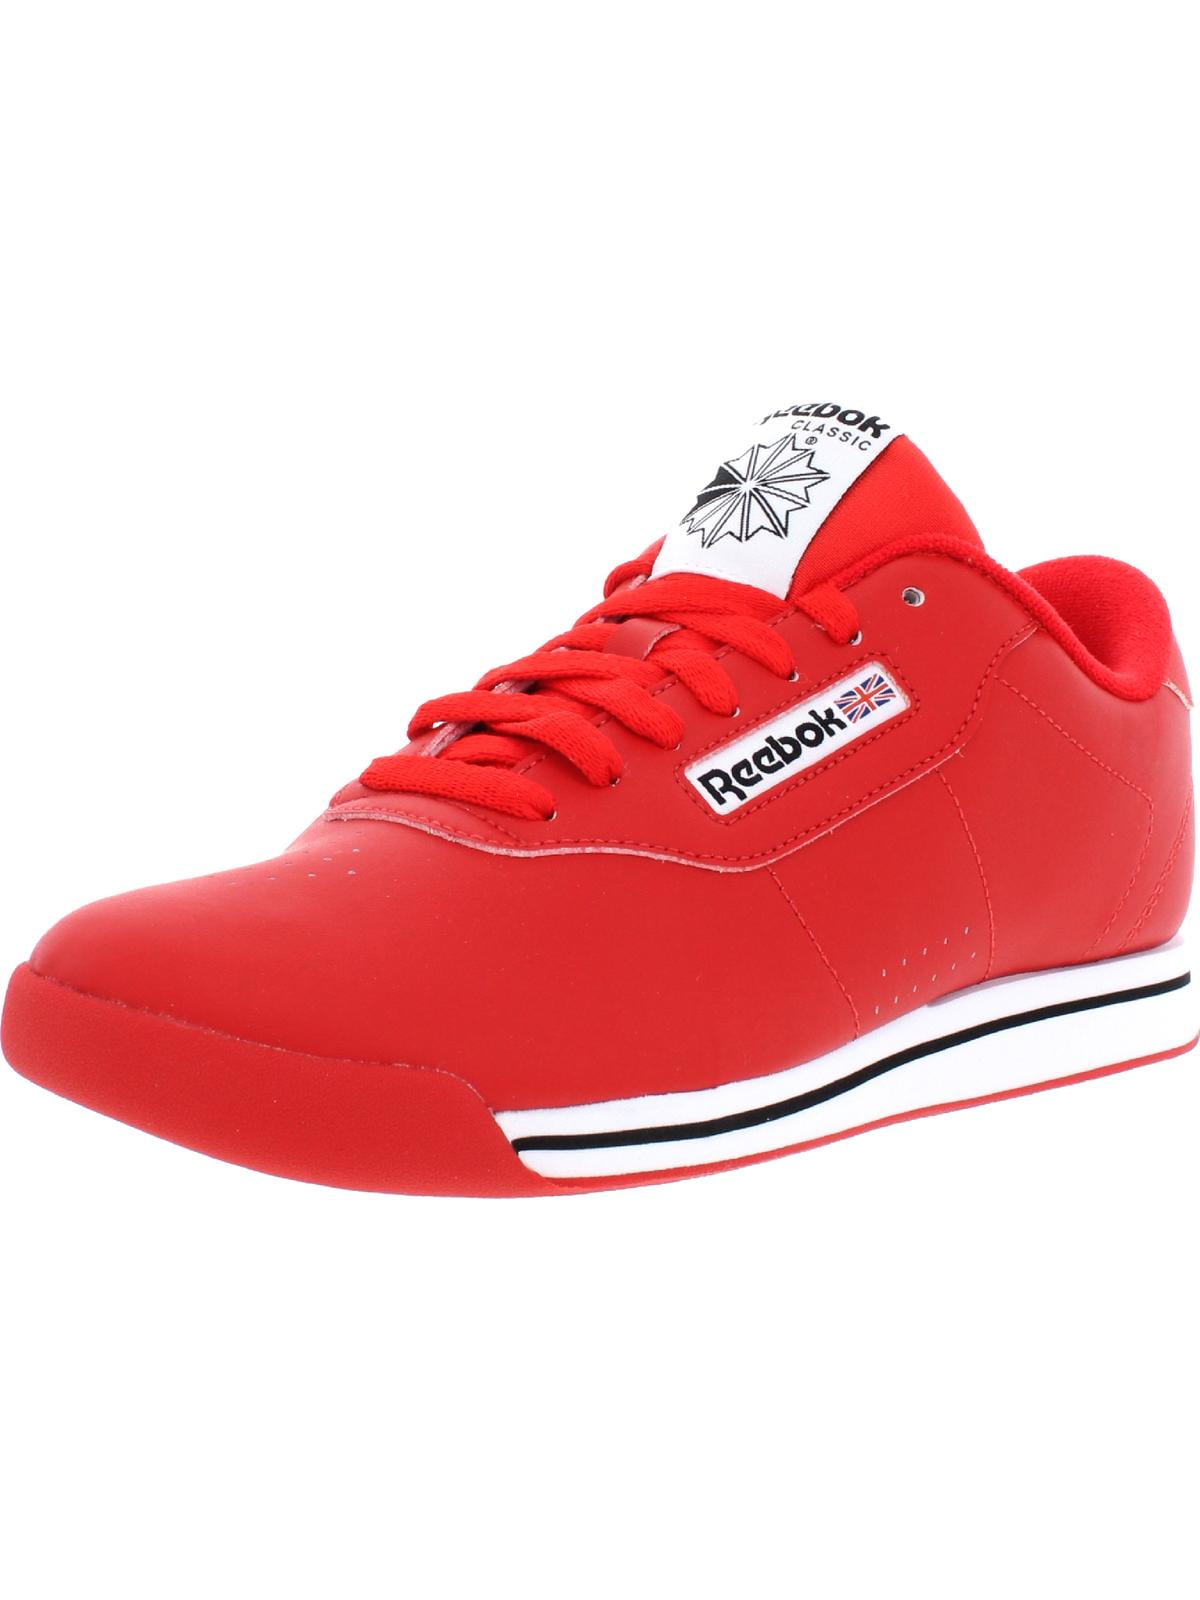 Reebok Womens Fashion Low-Top Athletic Shoes - Walmart.com